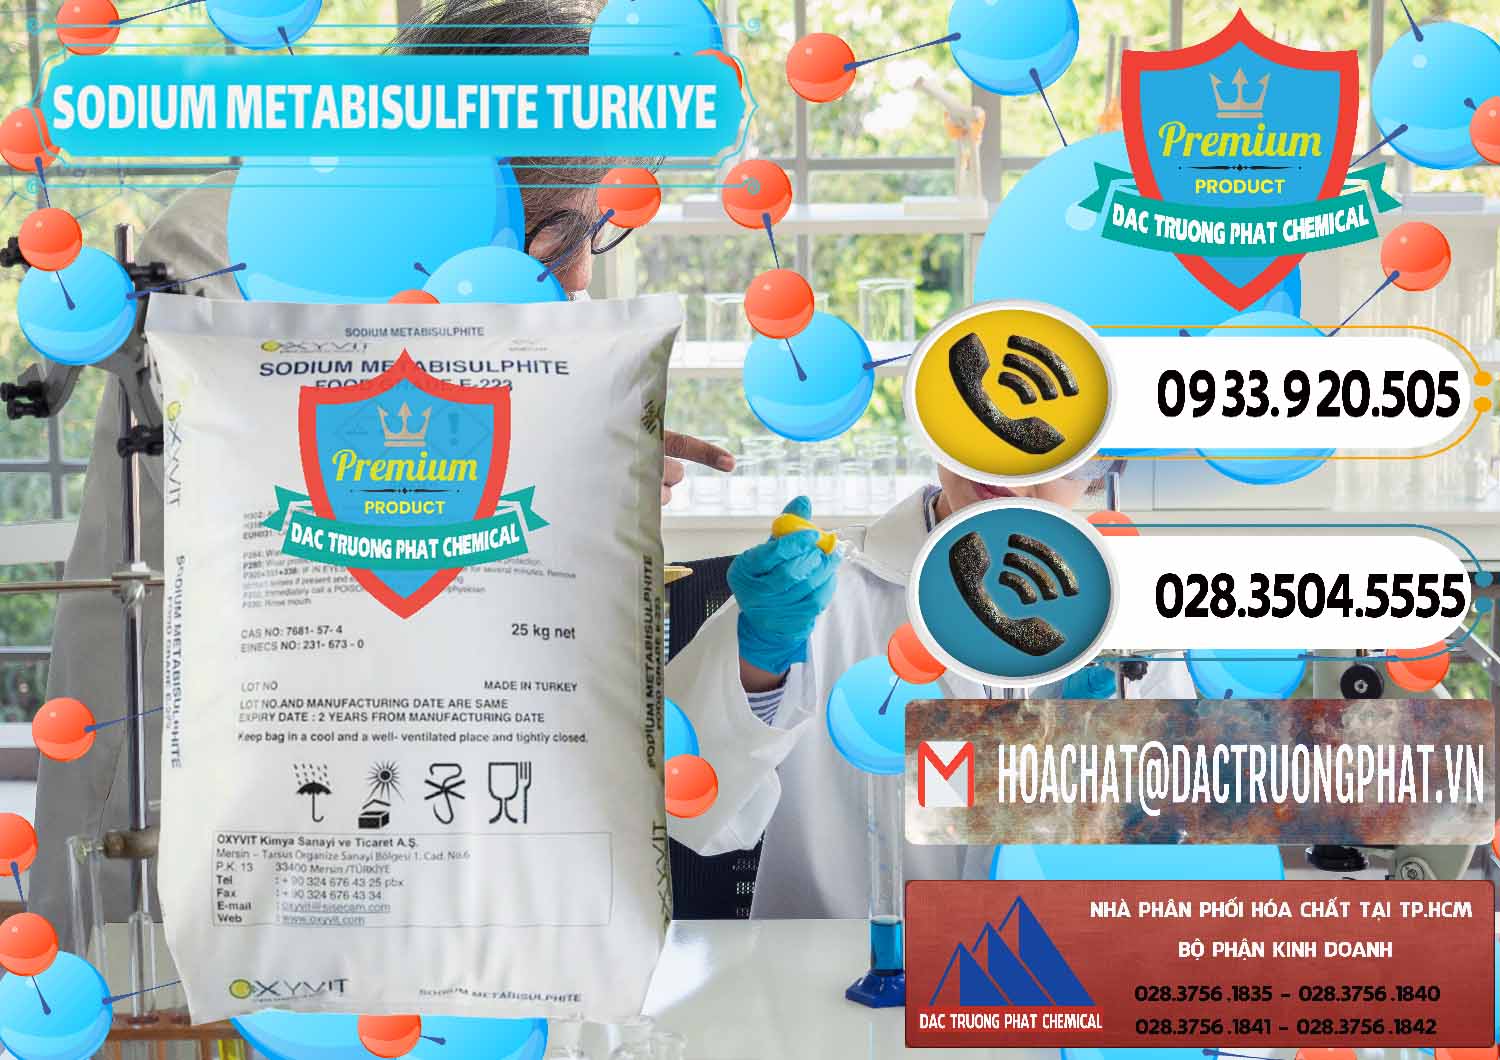 Cty chuyên kinh doanh & bán Sodium Metabisulfite - NA2S2O5 Food Grade E-223 Thổ Nhĩ Kỳ Turkey - 0413 - Công ty bán ( phân phối ) hóa chất tại TP.HCM - hoachatdetnhuom.vn